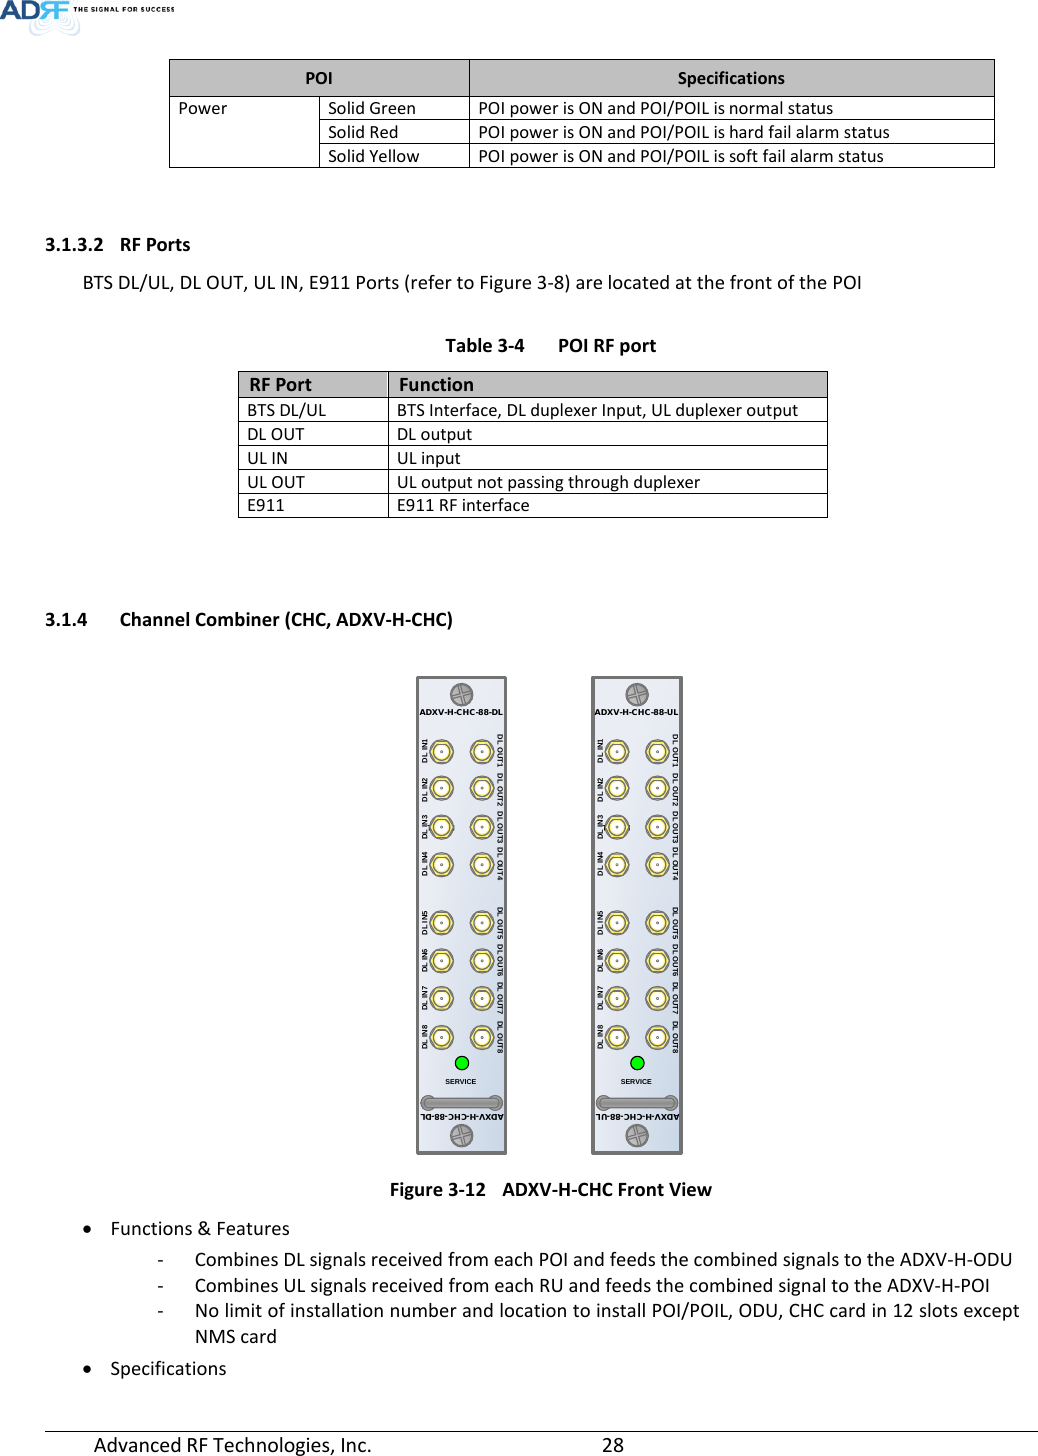 Page 28 of ADRF KOREA ADXV-R-25VUNA DAS (Distributed Antenna System) User Manual ADXV DAS